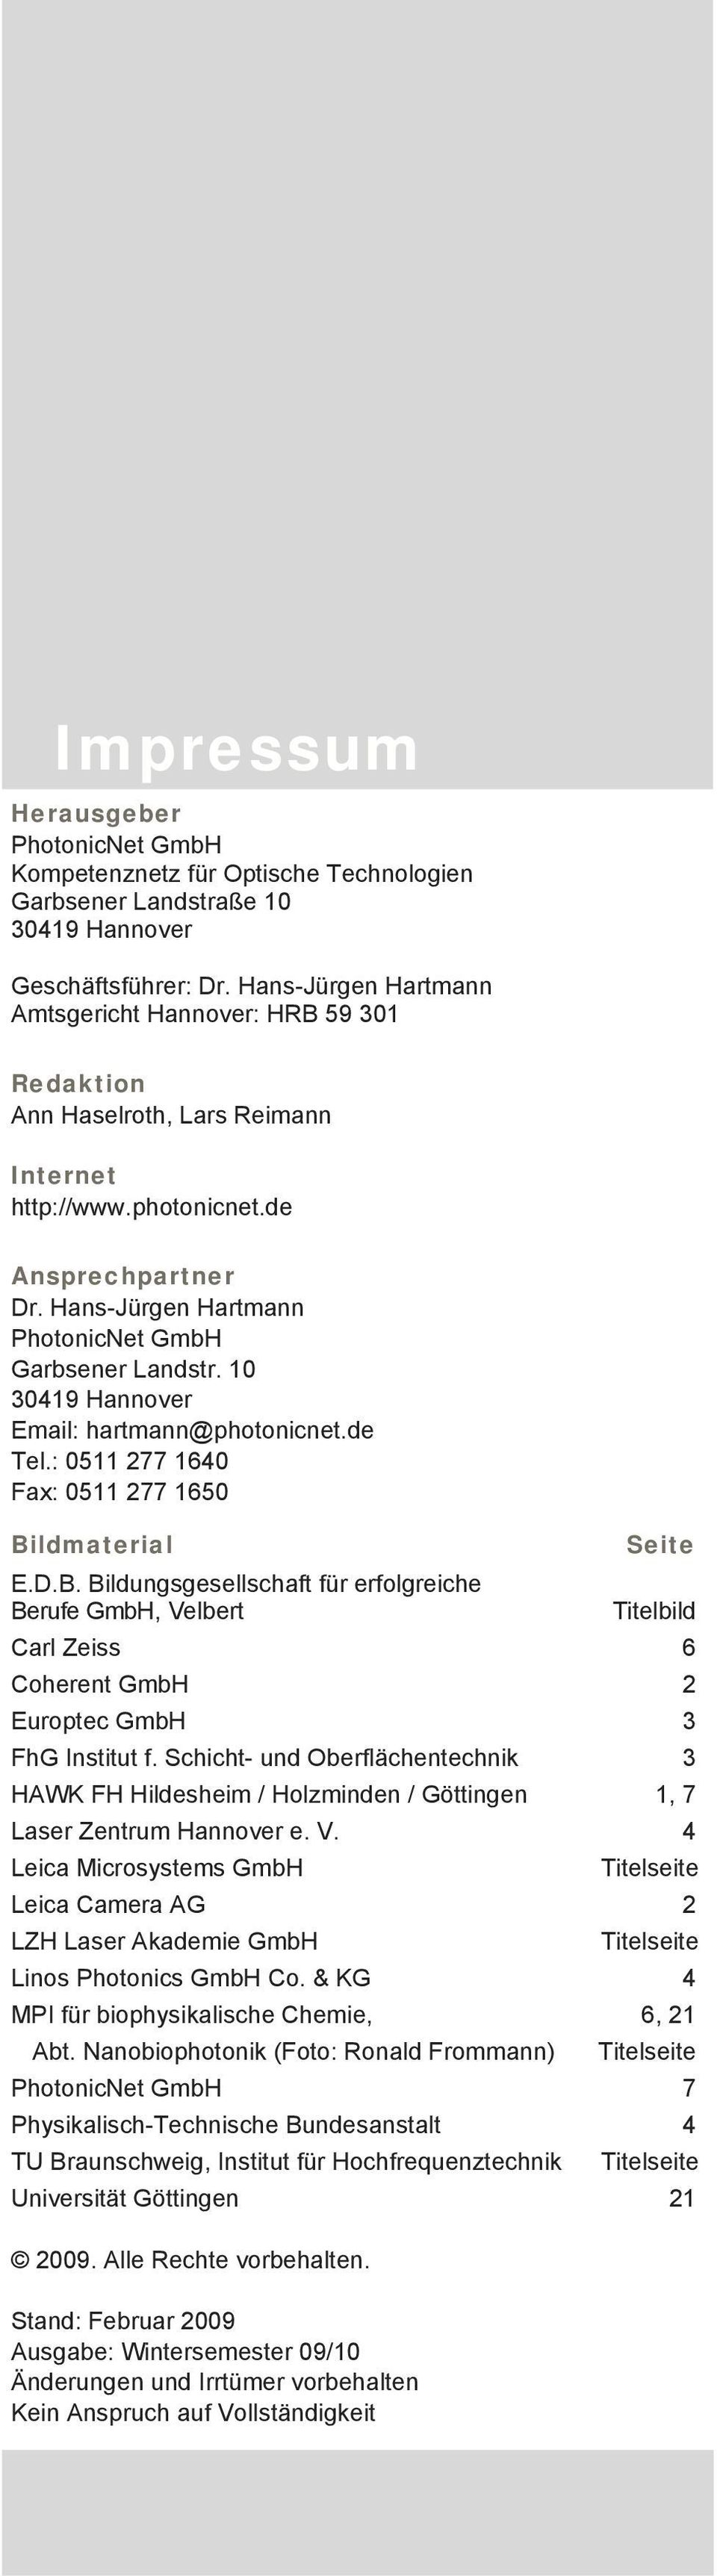 Hans-Jürgen Hartmann PhotonicNet GmbH Garbsener Landstr. 10 30419 Hannover Email: hartmann@photonicnet.de Tel.: 0511 277 1640 Fax: 0511 277 1650 Bi